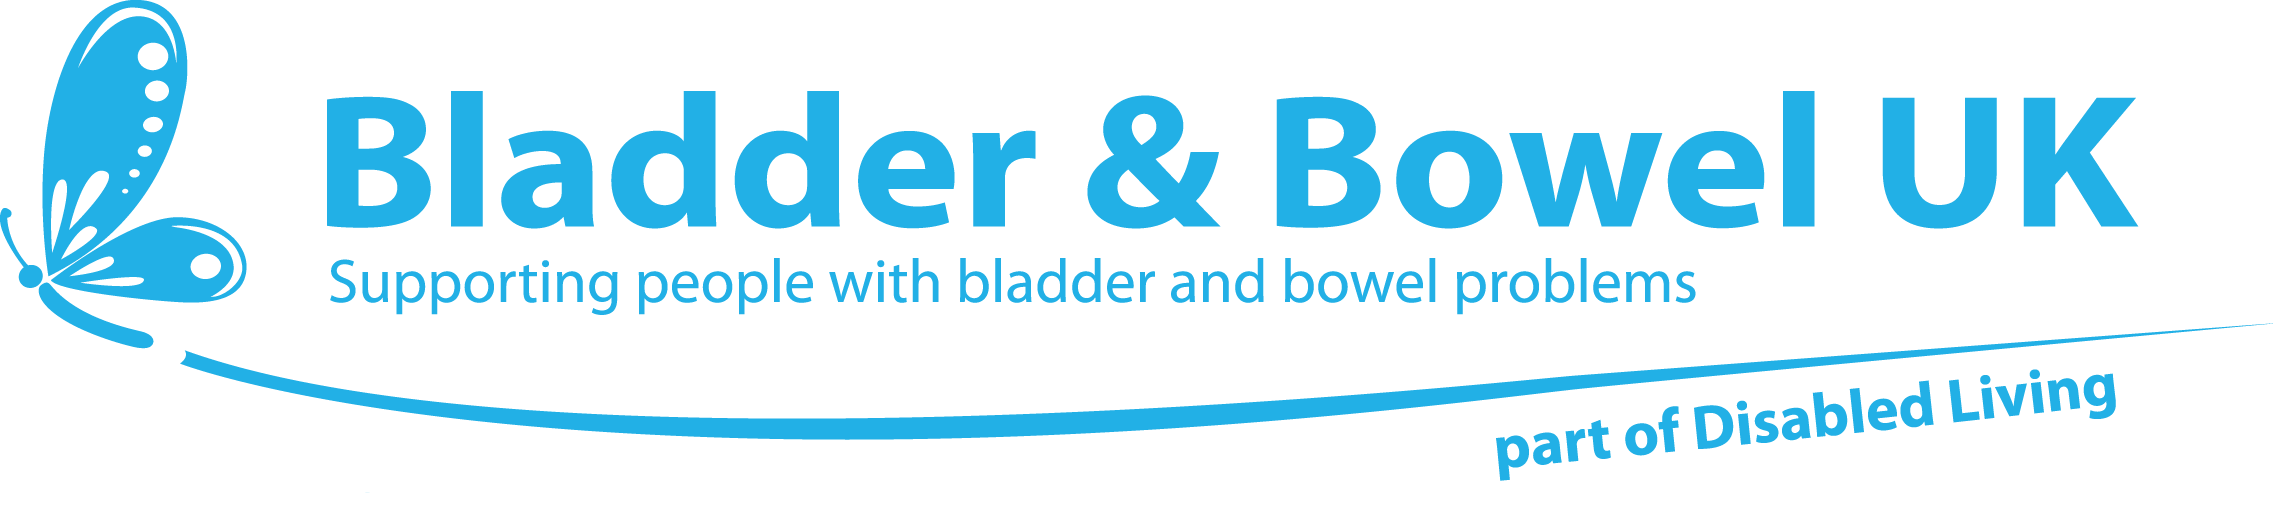 Bladder & Bowel UK